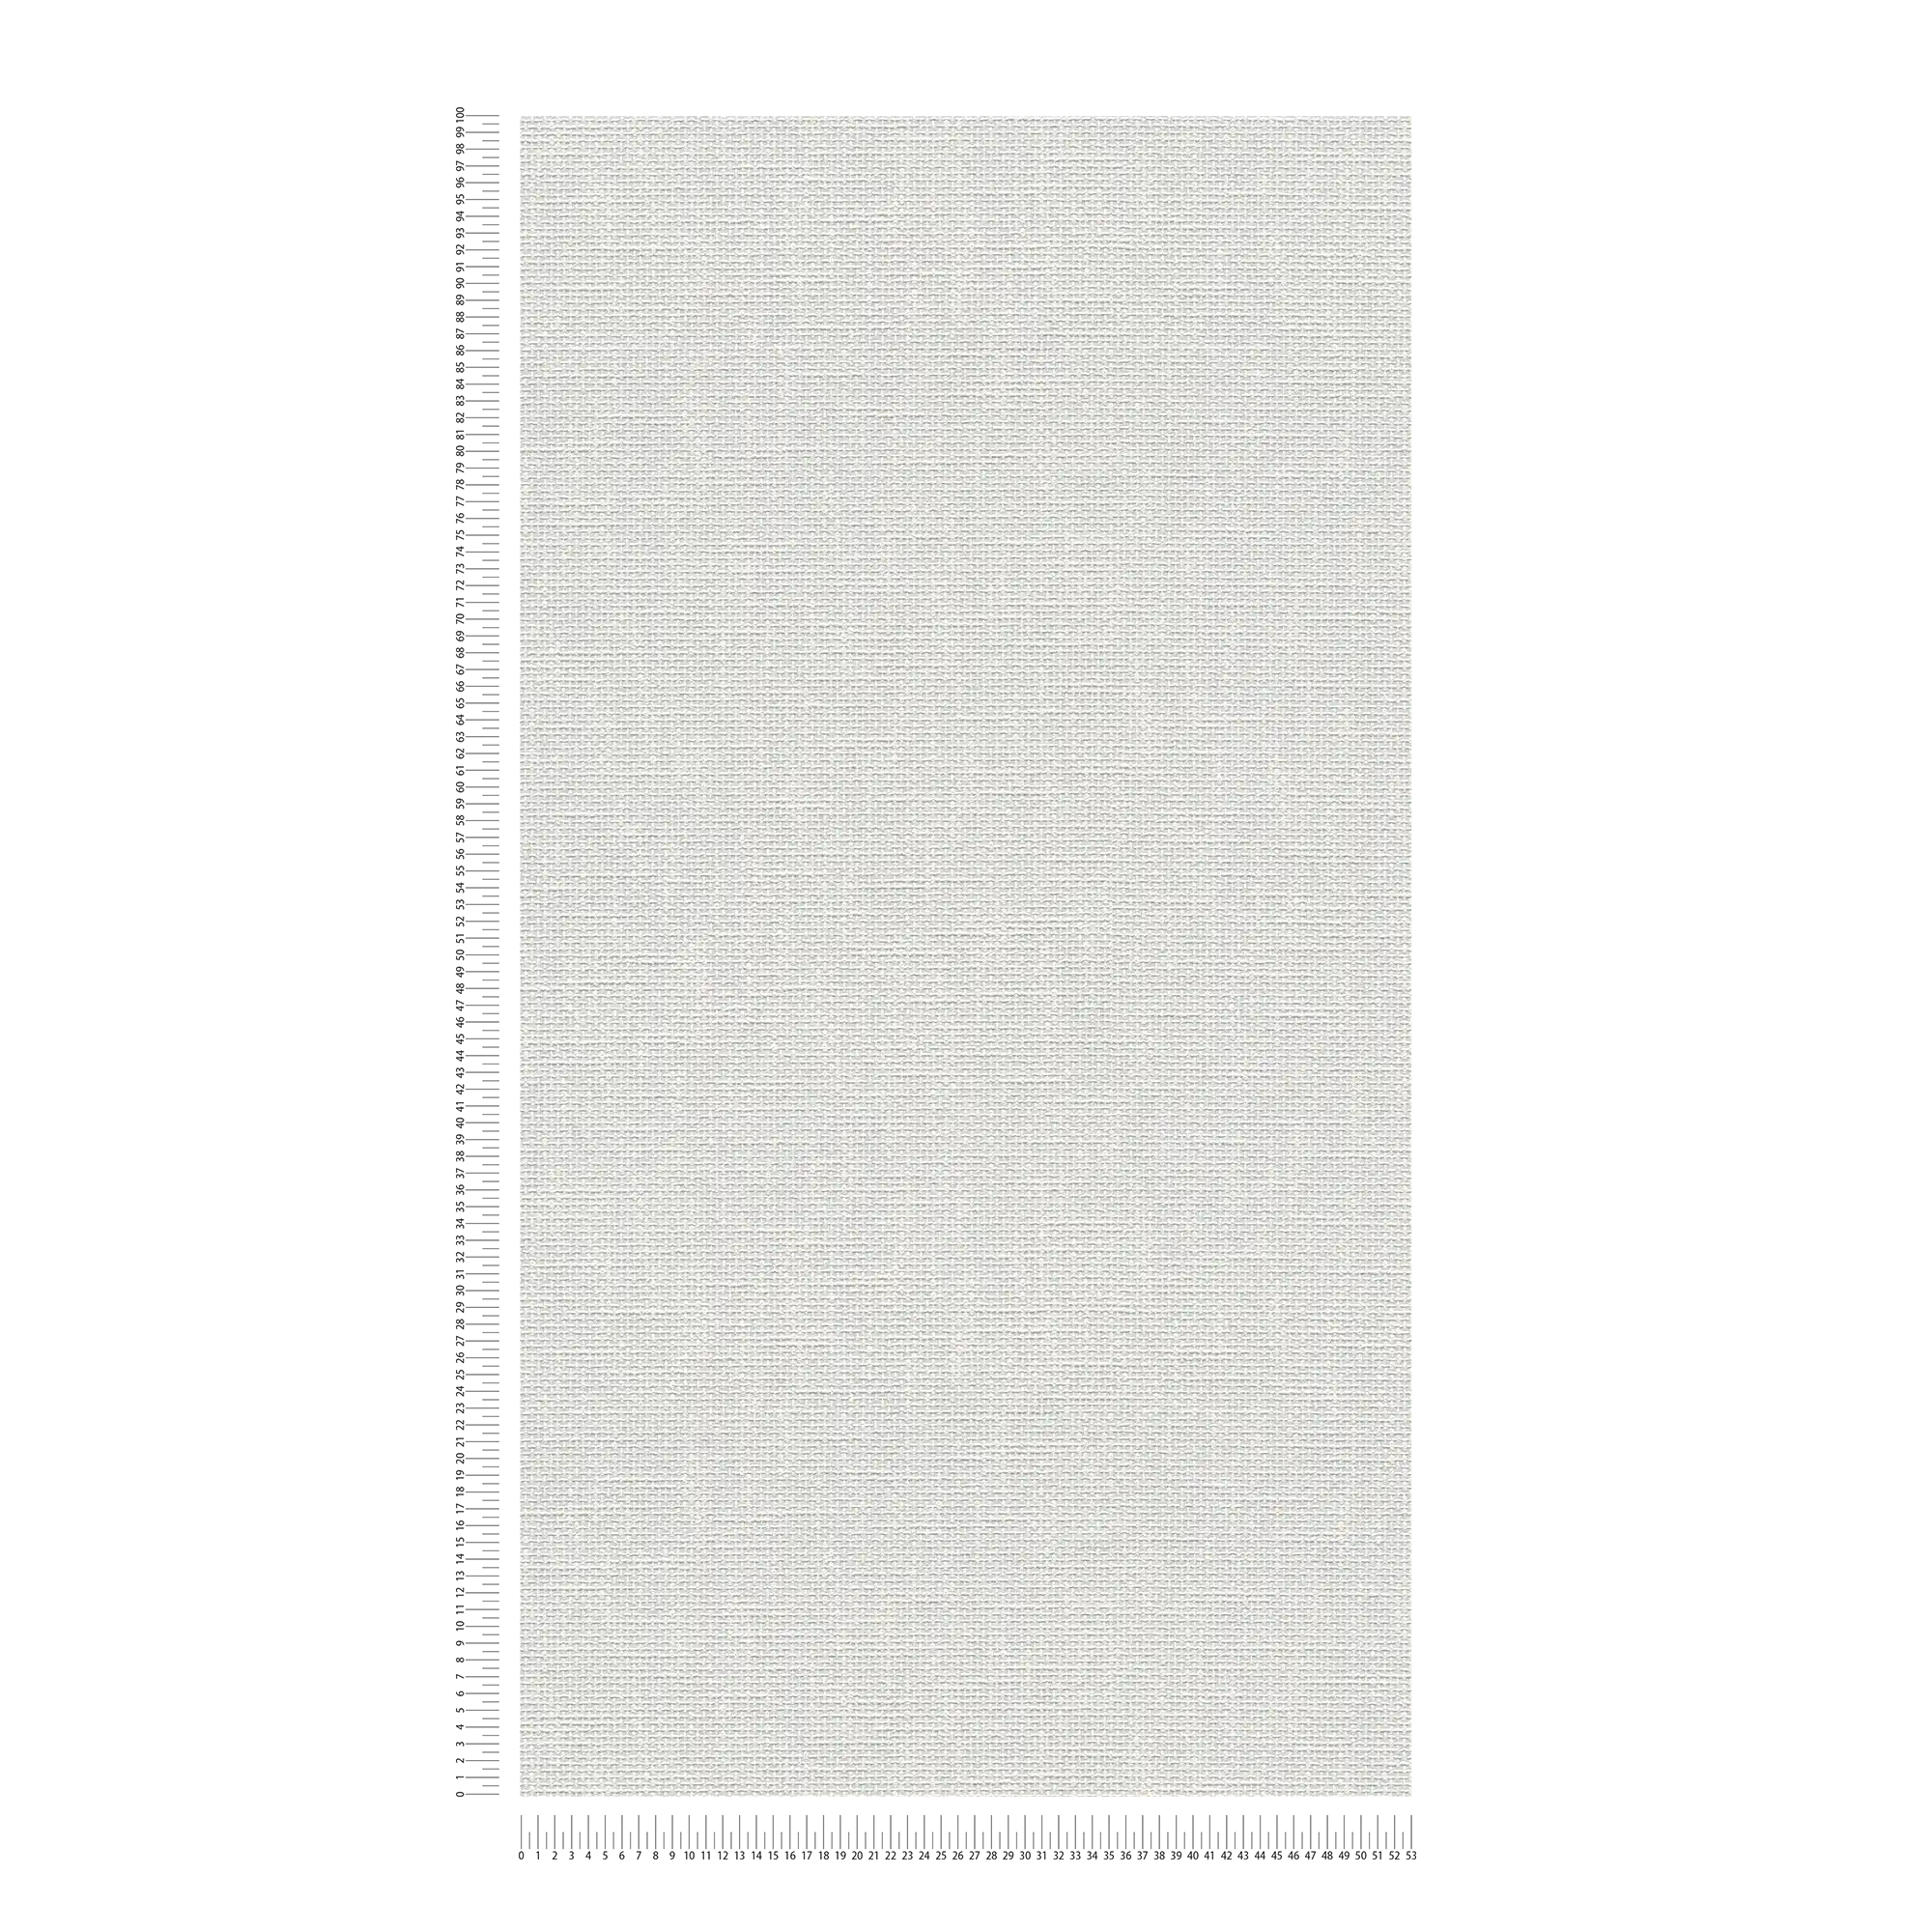             Carta da parati verniciabile in tessuto e aspetto tessile - bianco
        